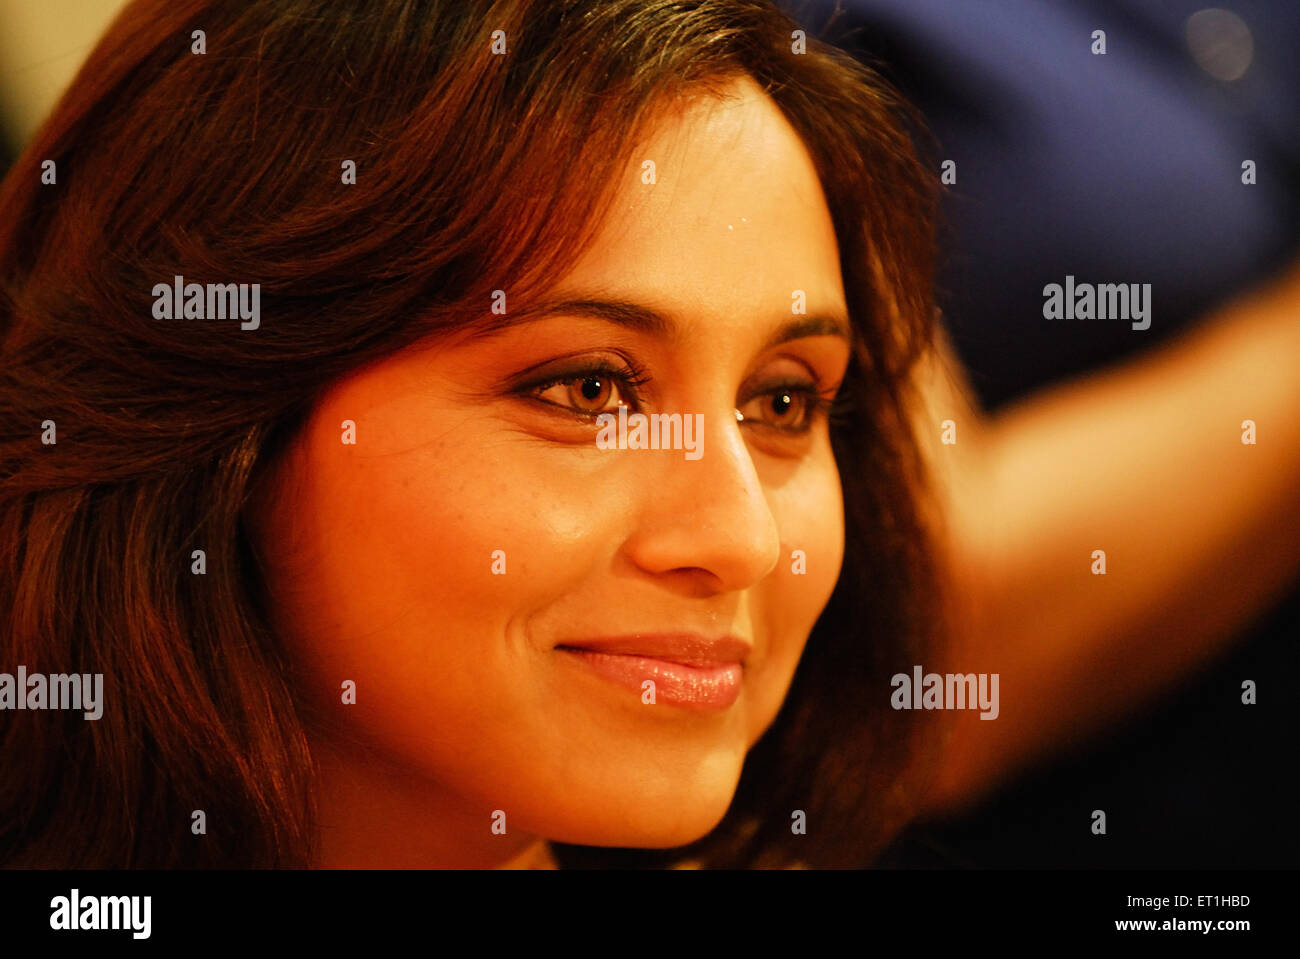 Rani Mukerji Indian actress India Asia Stock Photo